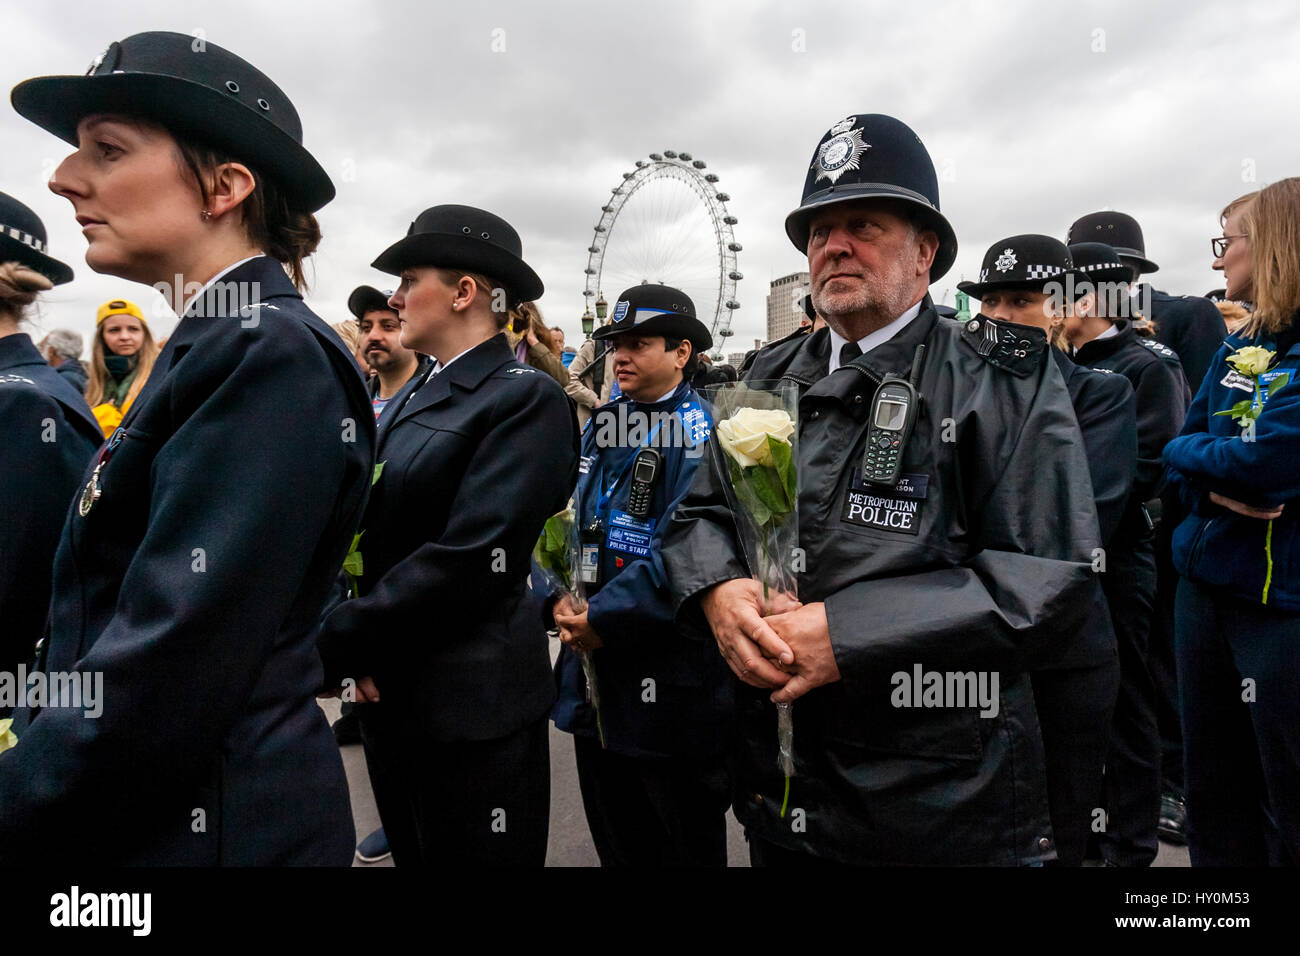 Une semaine après l'attaque terroriste de Londres la Police métropolitaine hommage aux victimes, le pont de Westminster, Londres, Angleterre Banque D'Images